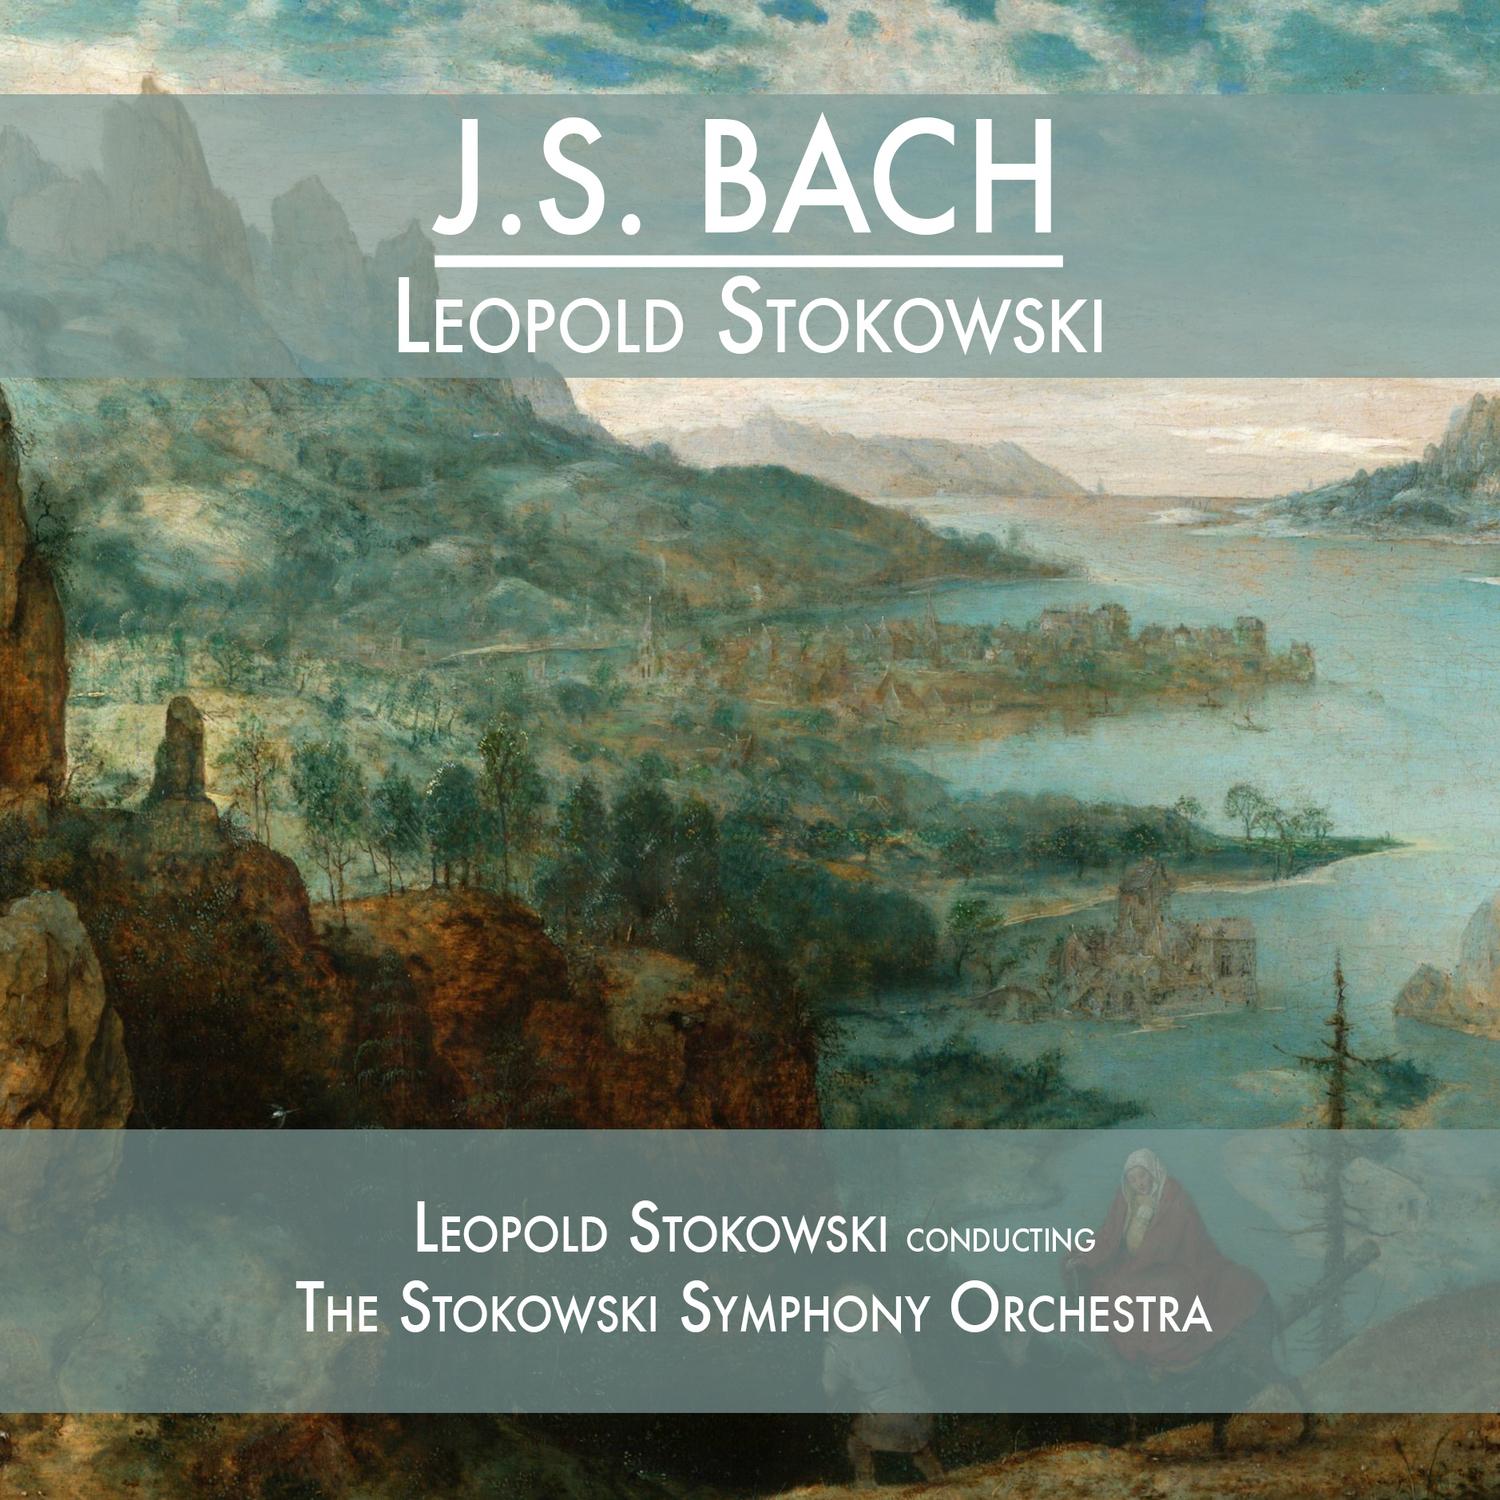 J.S. Bach - Leopold Stokowski